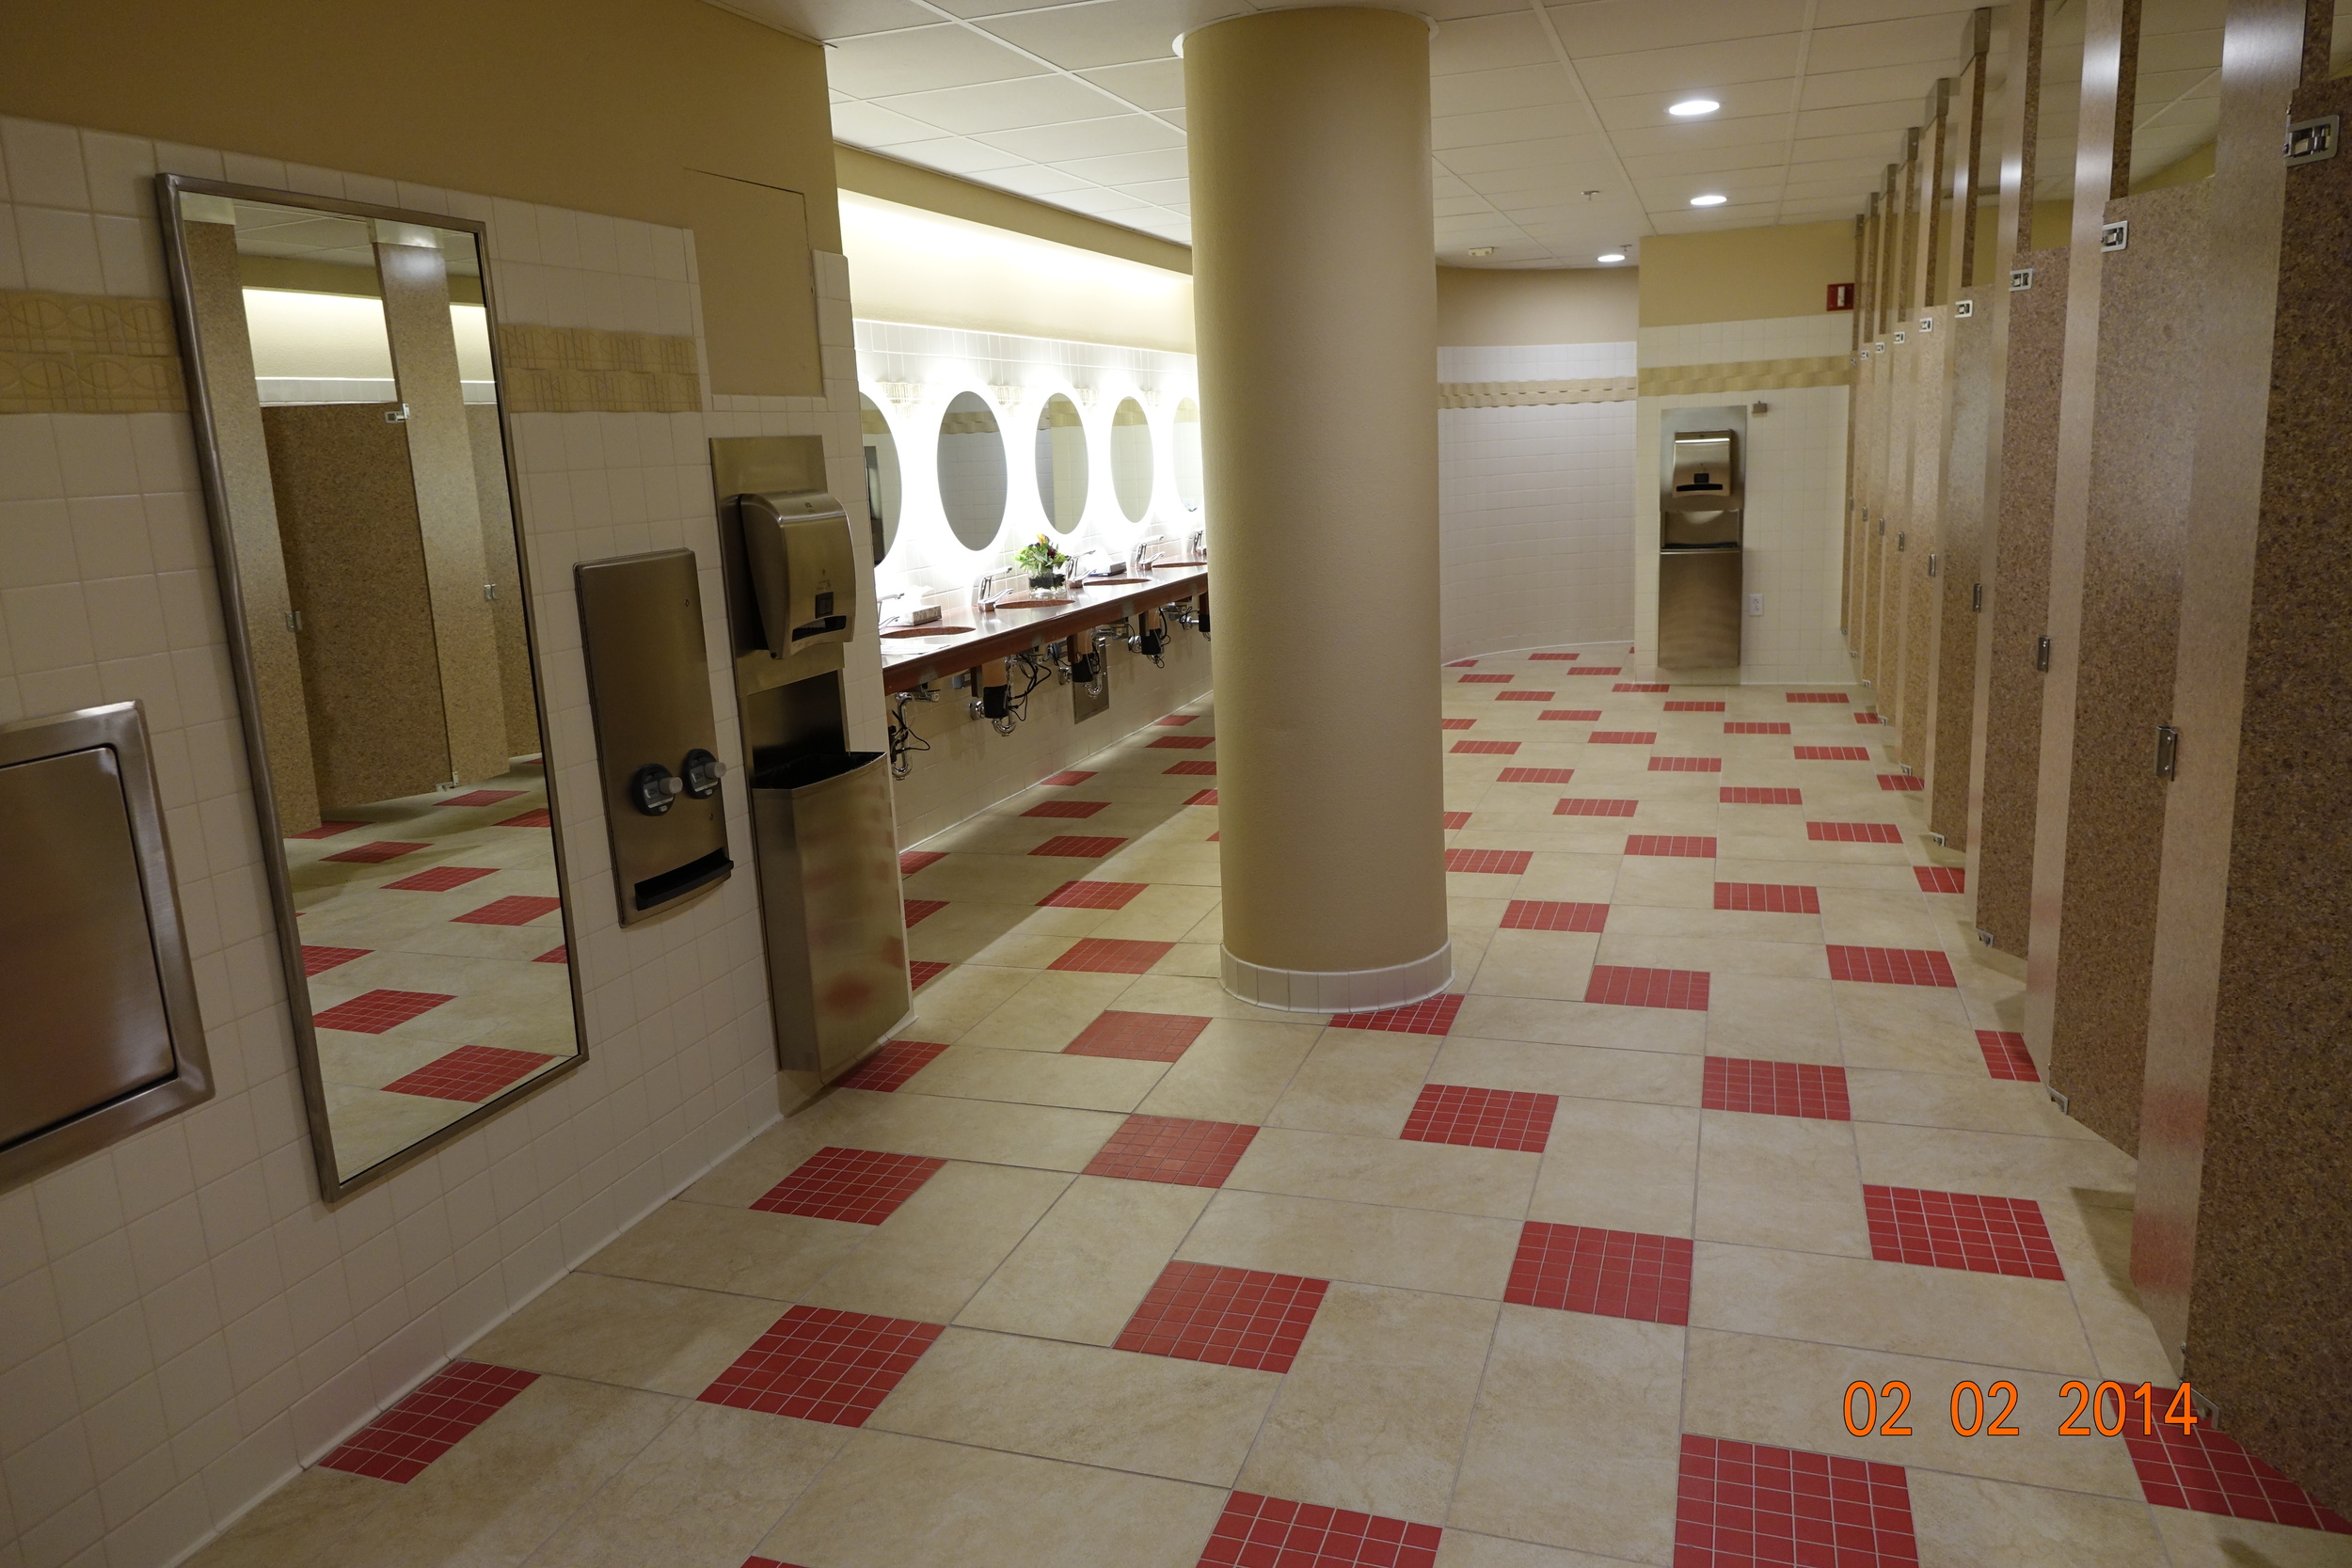 5-commercial floor designed by Nan_0010.JPG